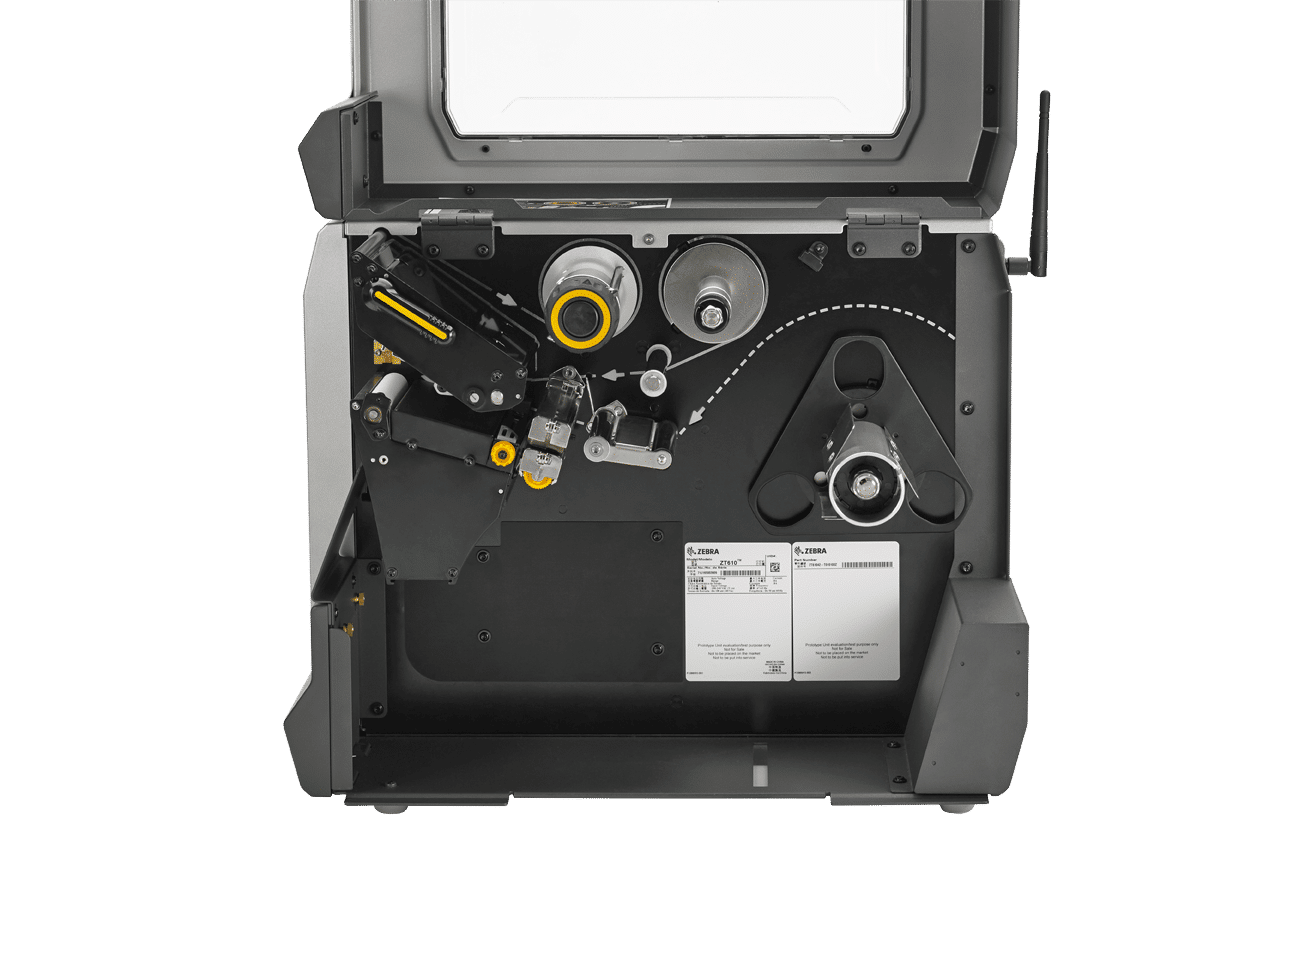 Impresora Zebra Zt610 Ingematic Cia Ltda 1108